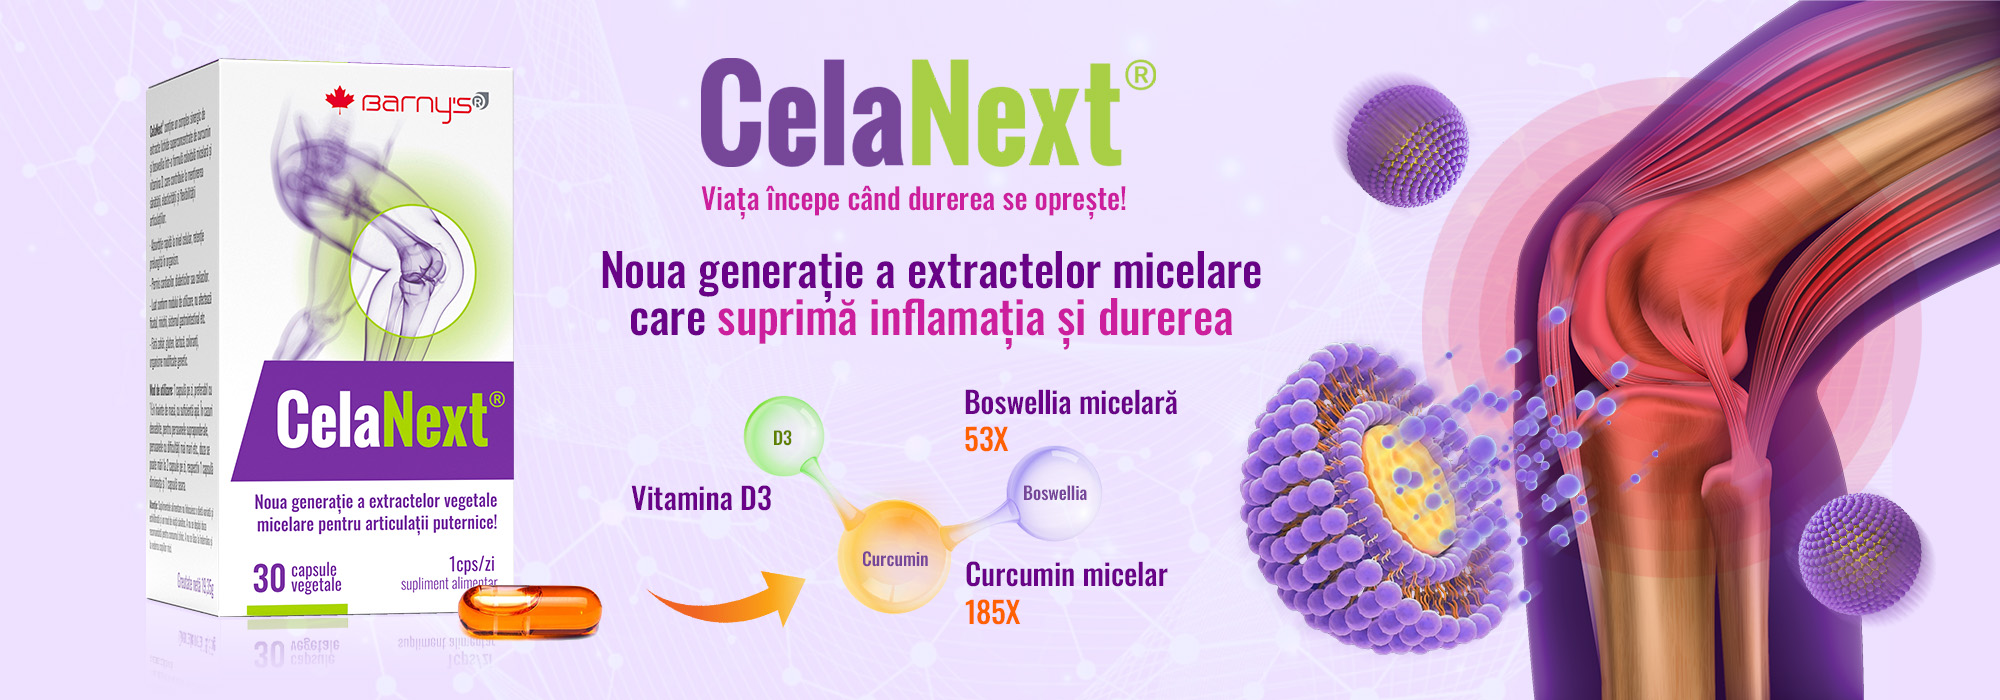 CelaNext - Noua generatie a extractelor micelare care suprima inflamatia si durerea!